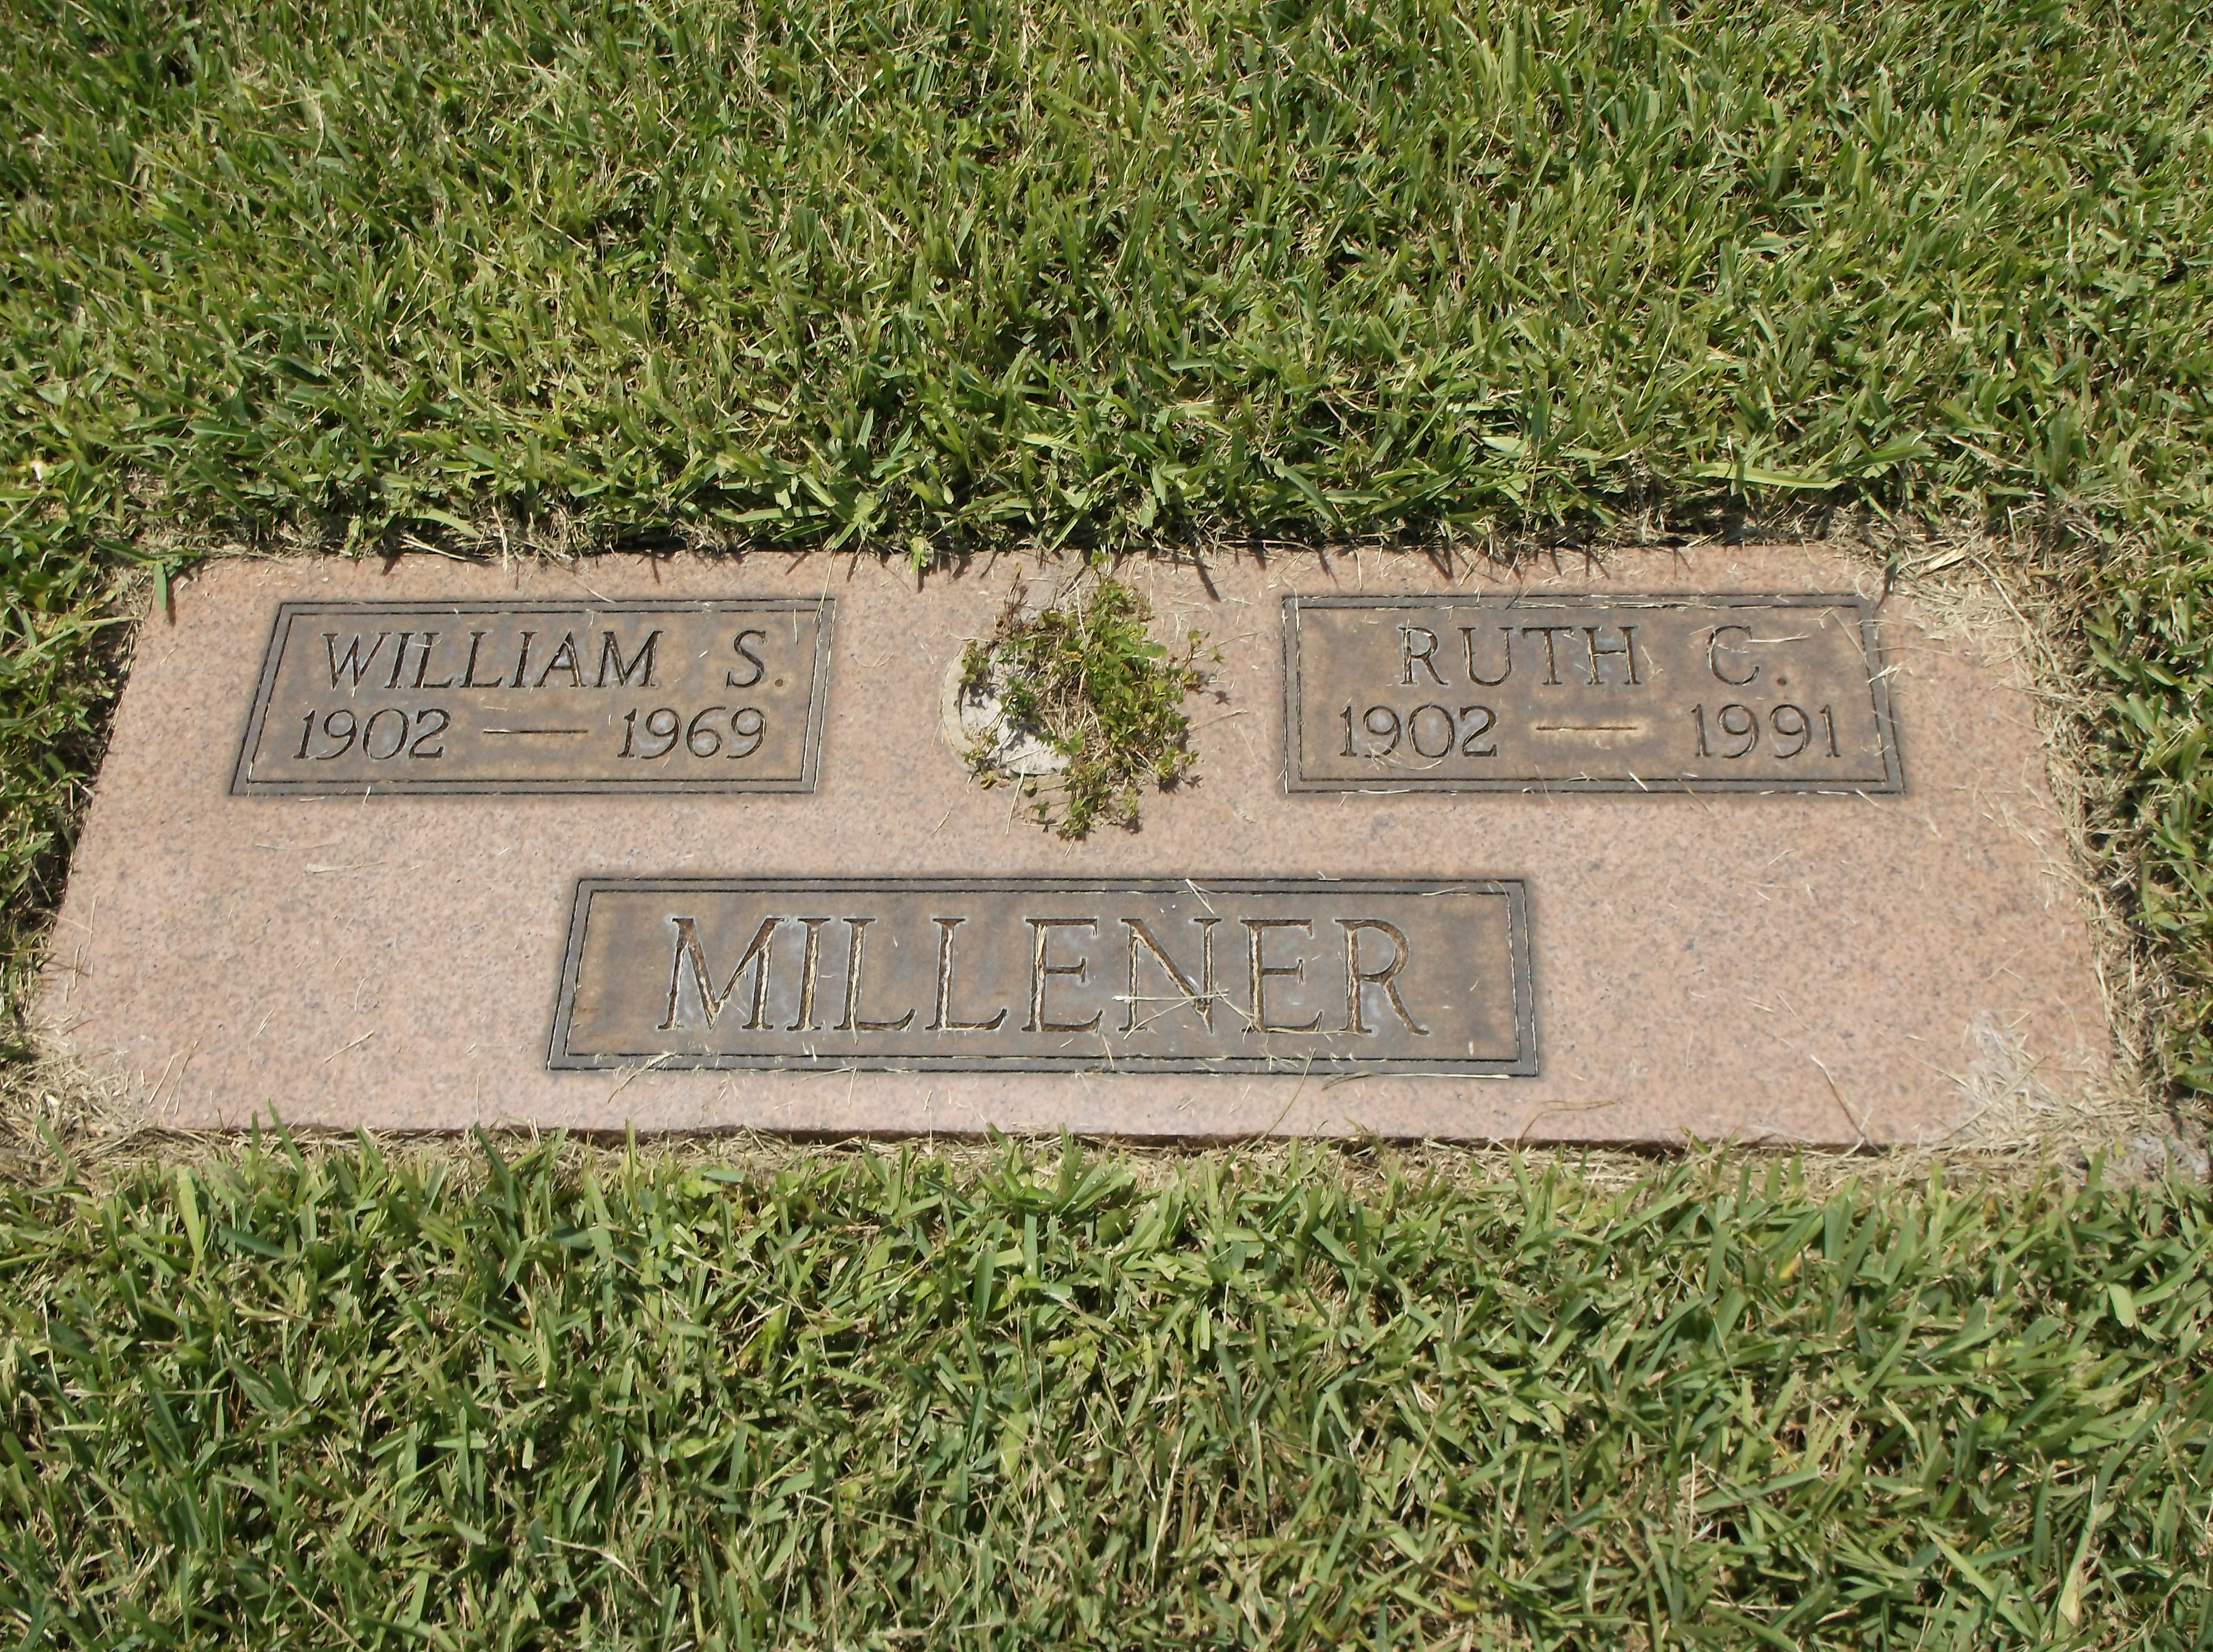 William S Millener